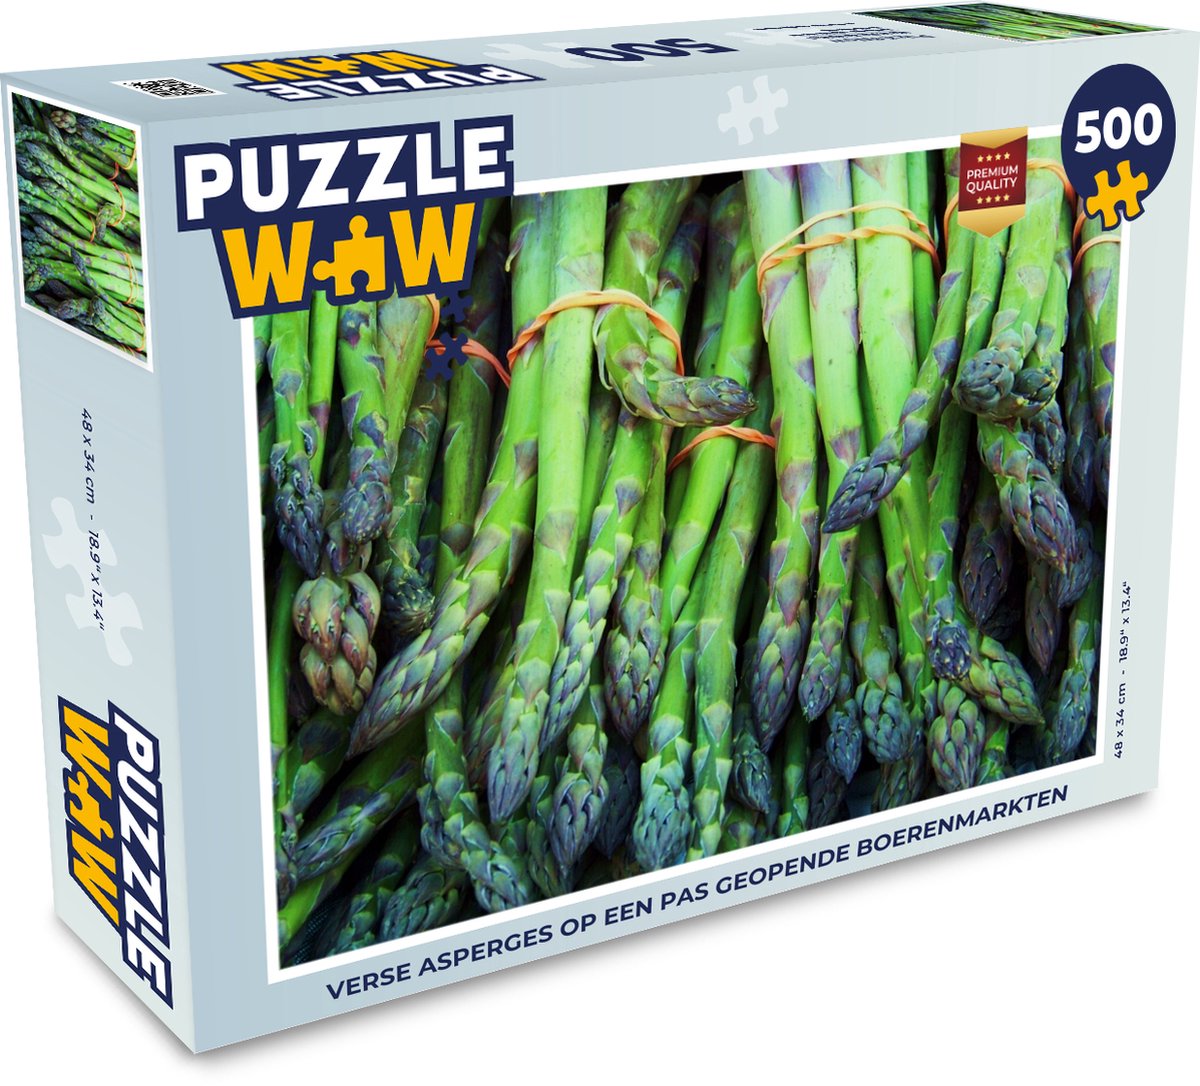 Afbeelding van product Puzzel 500 stukjes Asperge - Verse asperges op een pas geopende boerenmarkten - PuzzleWow heeft +100000 puzzels